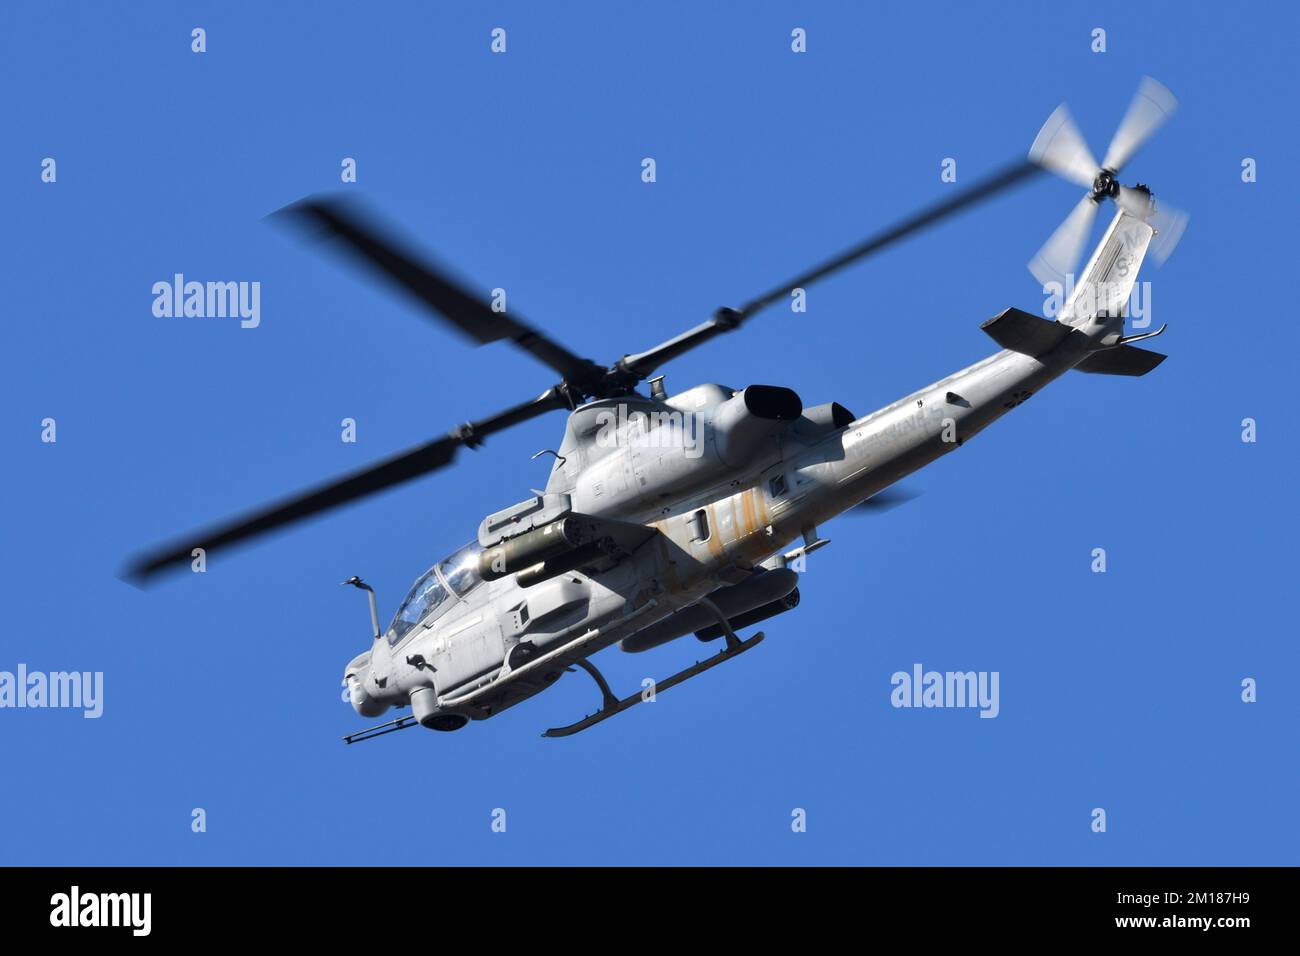 Prefettura di Kanagawa, Giappone - 18 dicembre 2021: CORPO dei MARINE DEGLI STATI UNITI Bell AH-1Z elicottero Viper Attack da HMLA-369 Gunfighters. Foto Stock